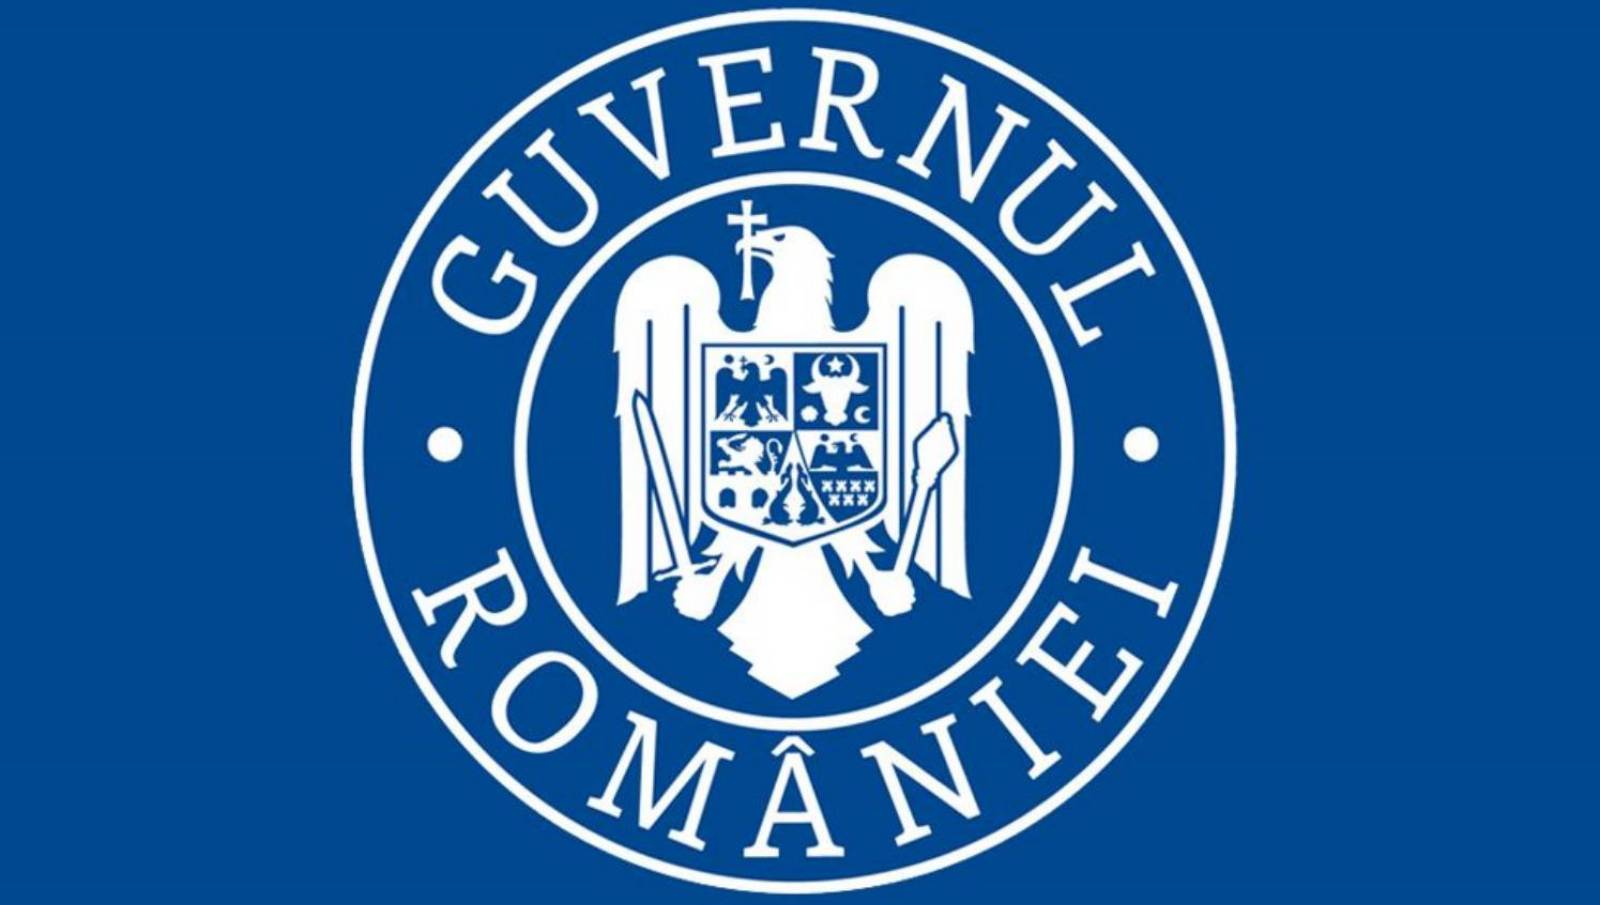 Guvernul Romaniei carantinarea judete